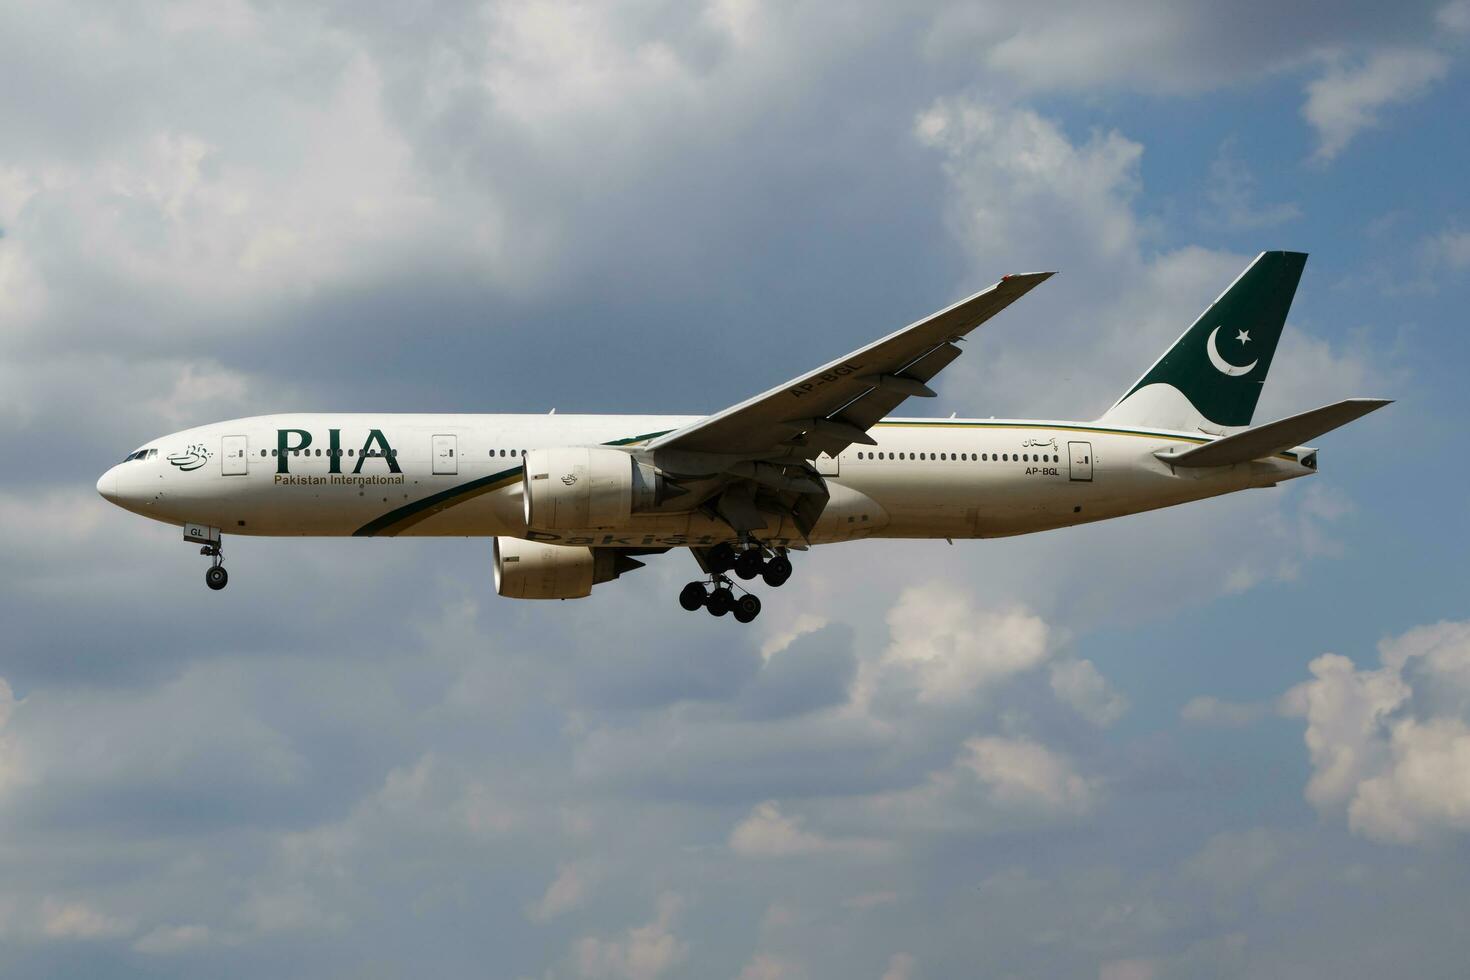 pia Pakistan international compagnies aériennes Boeing 777-200 ap-bgl passager avion atterrissage à Londres bruyère aéroport photo